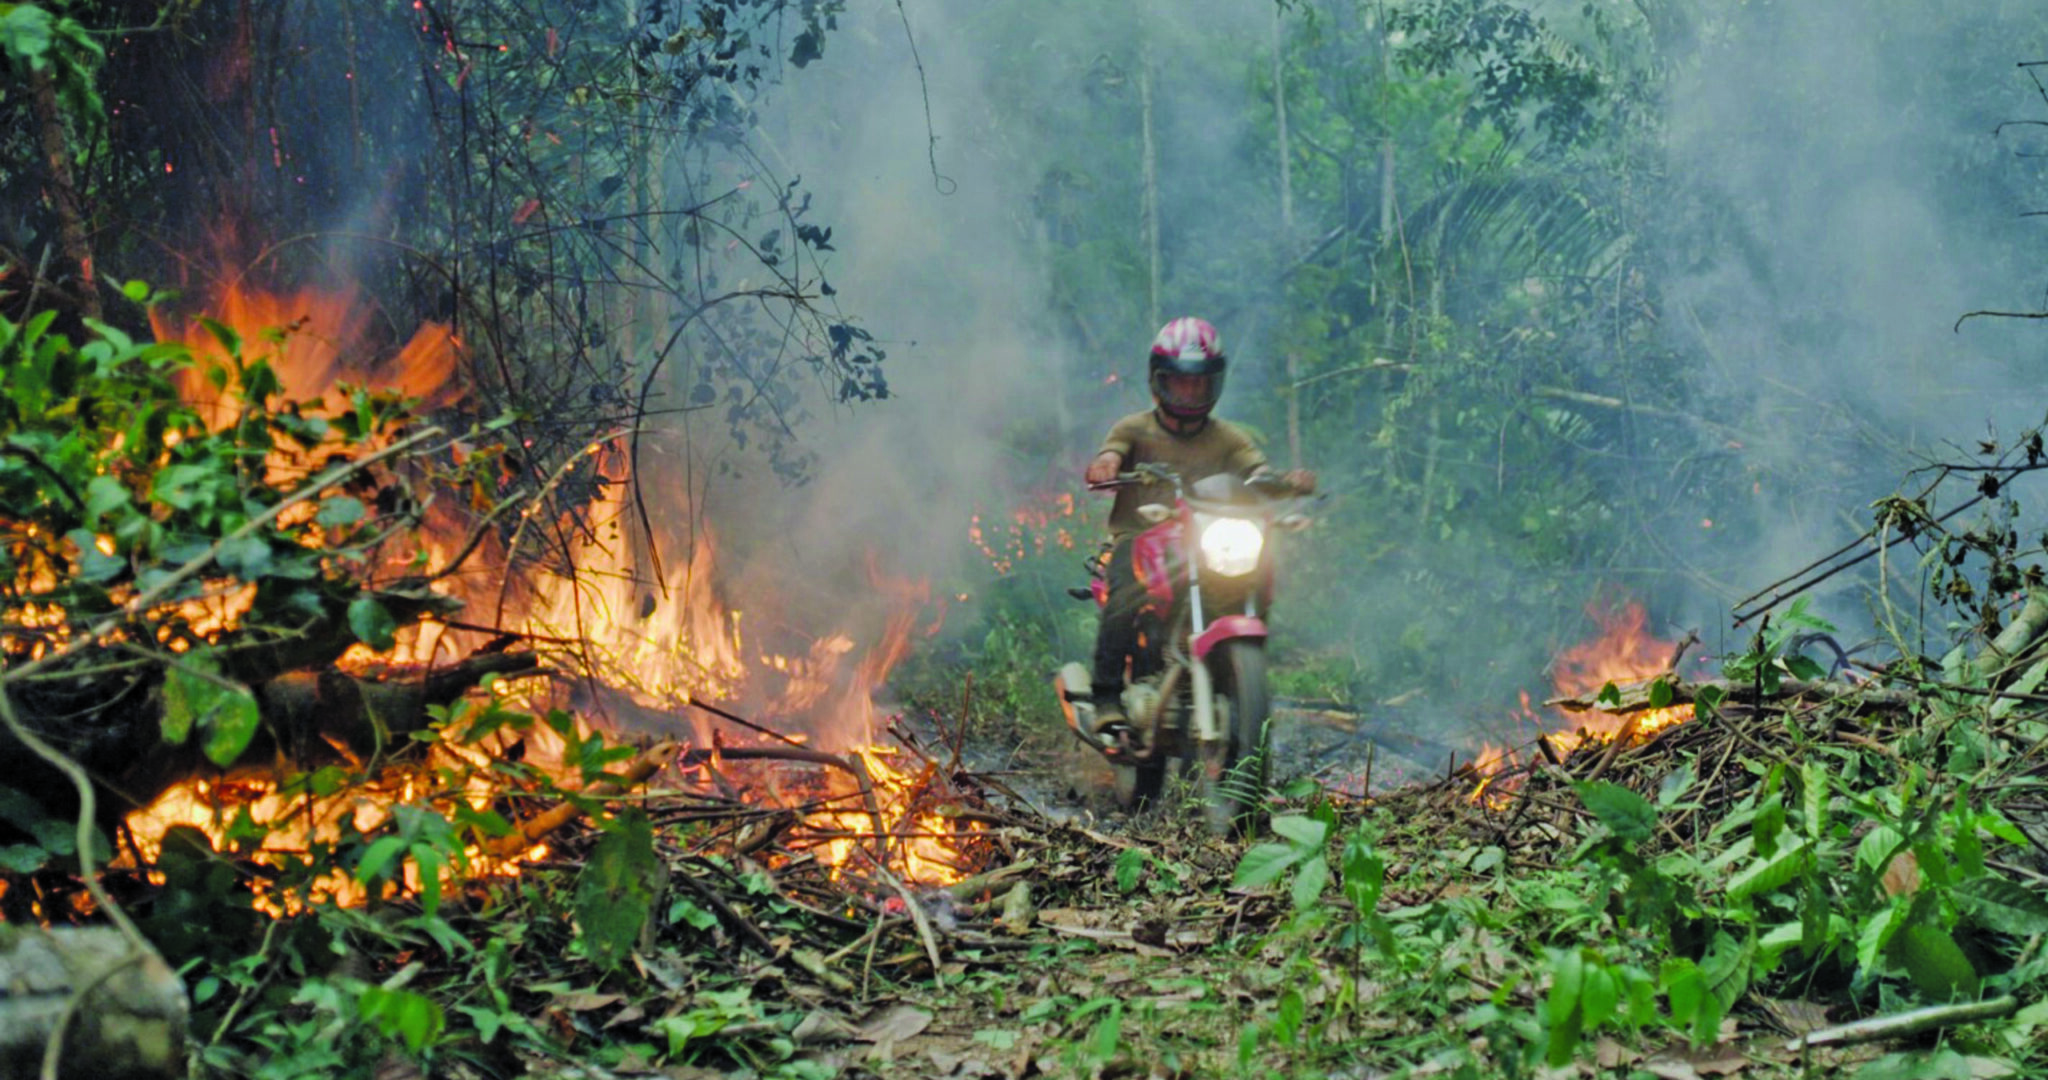 一个佩戴头盔的人骑摩托车骑通过燃烧的树叶。